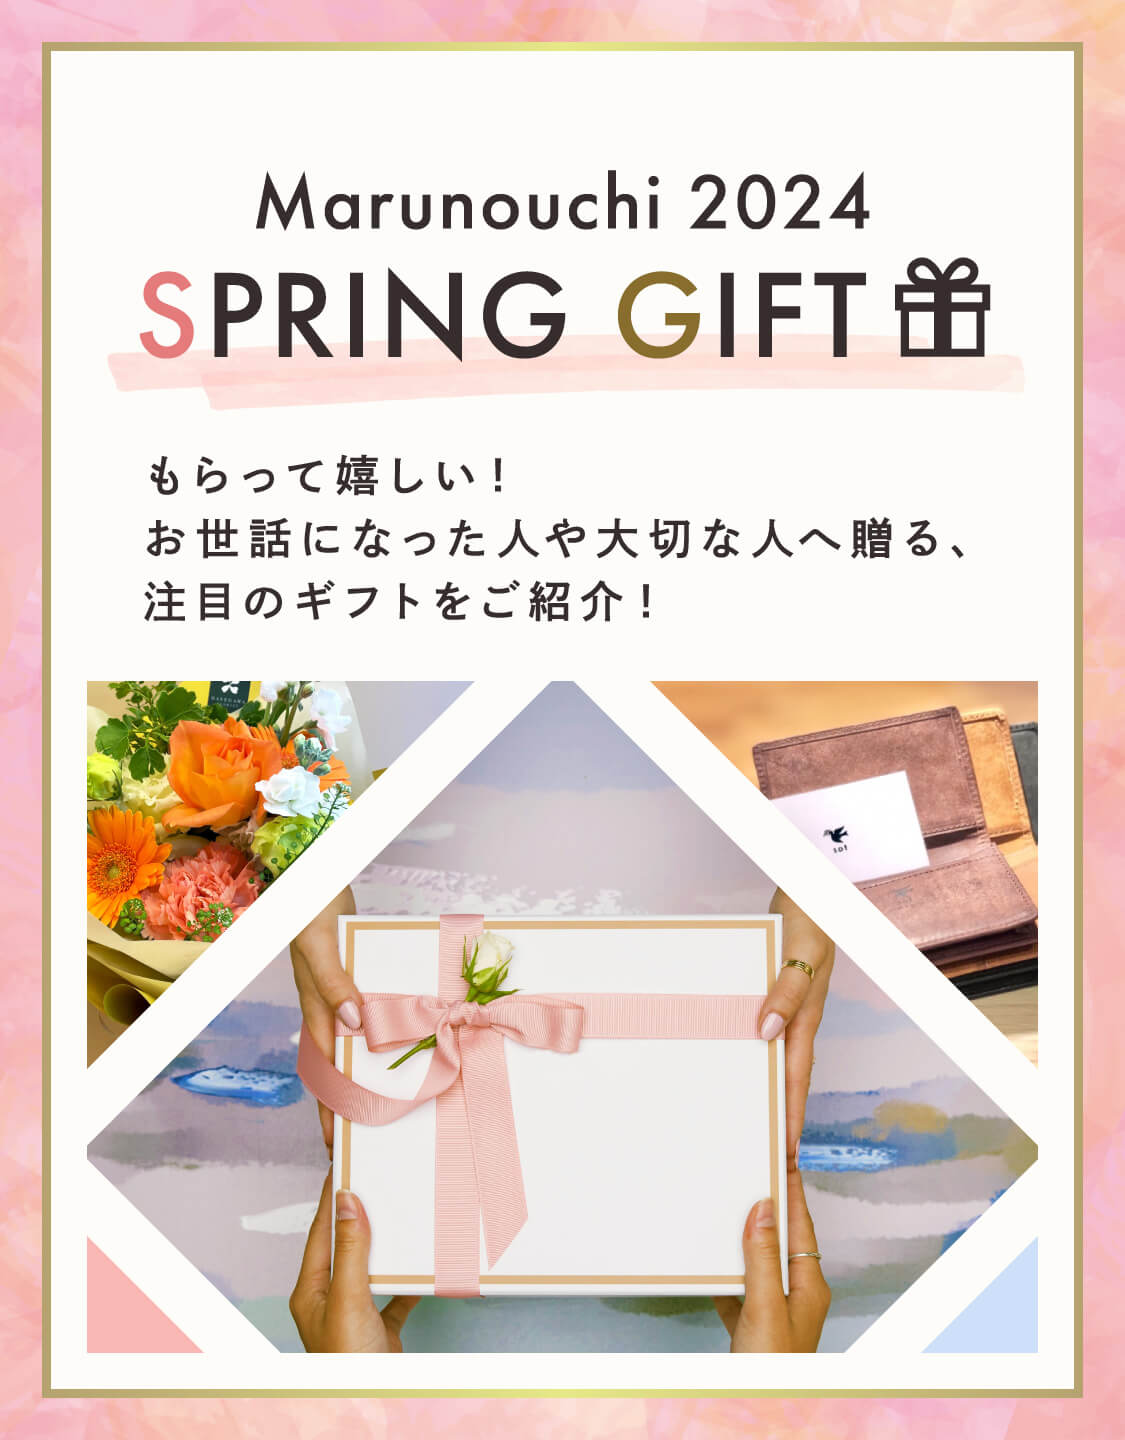 收到Marunouchi 2024 SPRING GIFT很高兴!为您介绍一款值得关注的礼物，它将赠送给照顾过自己的人和重要的人!